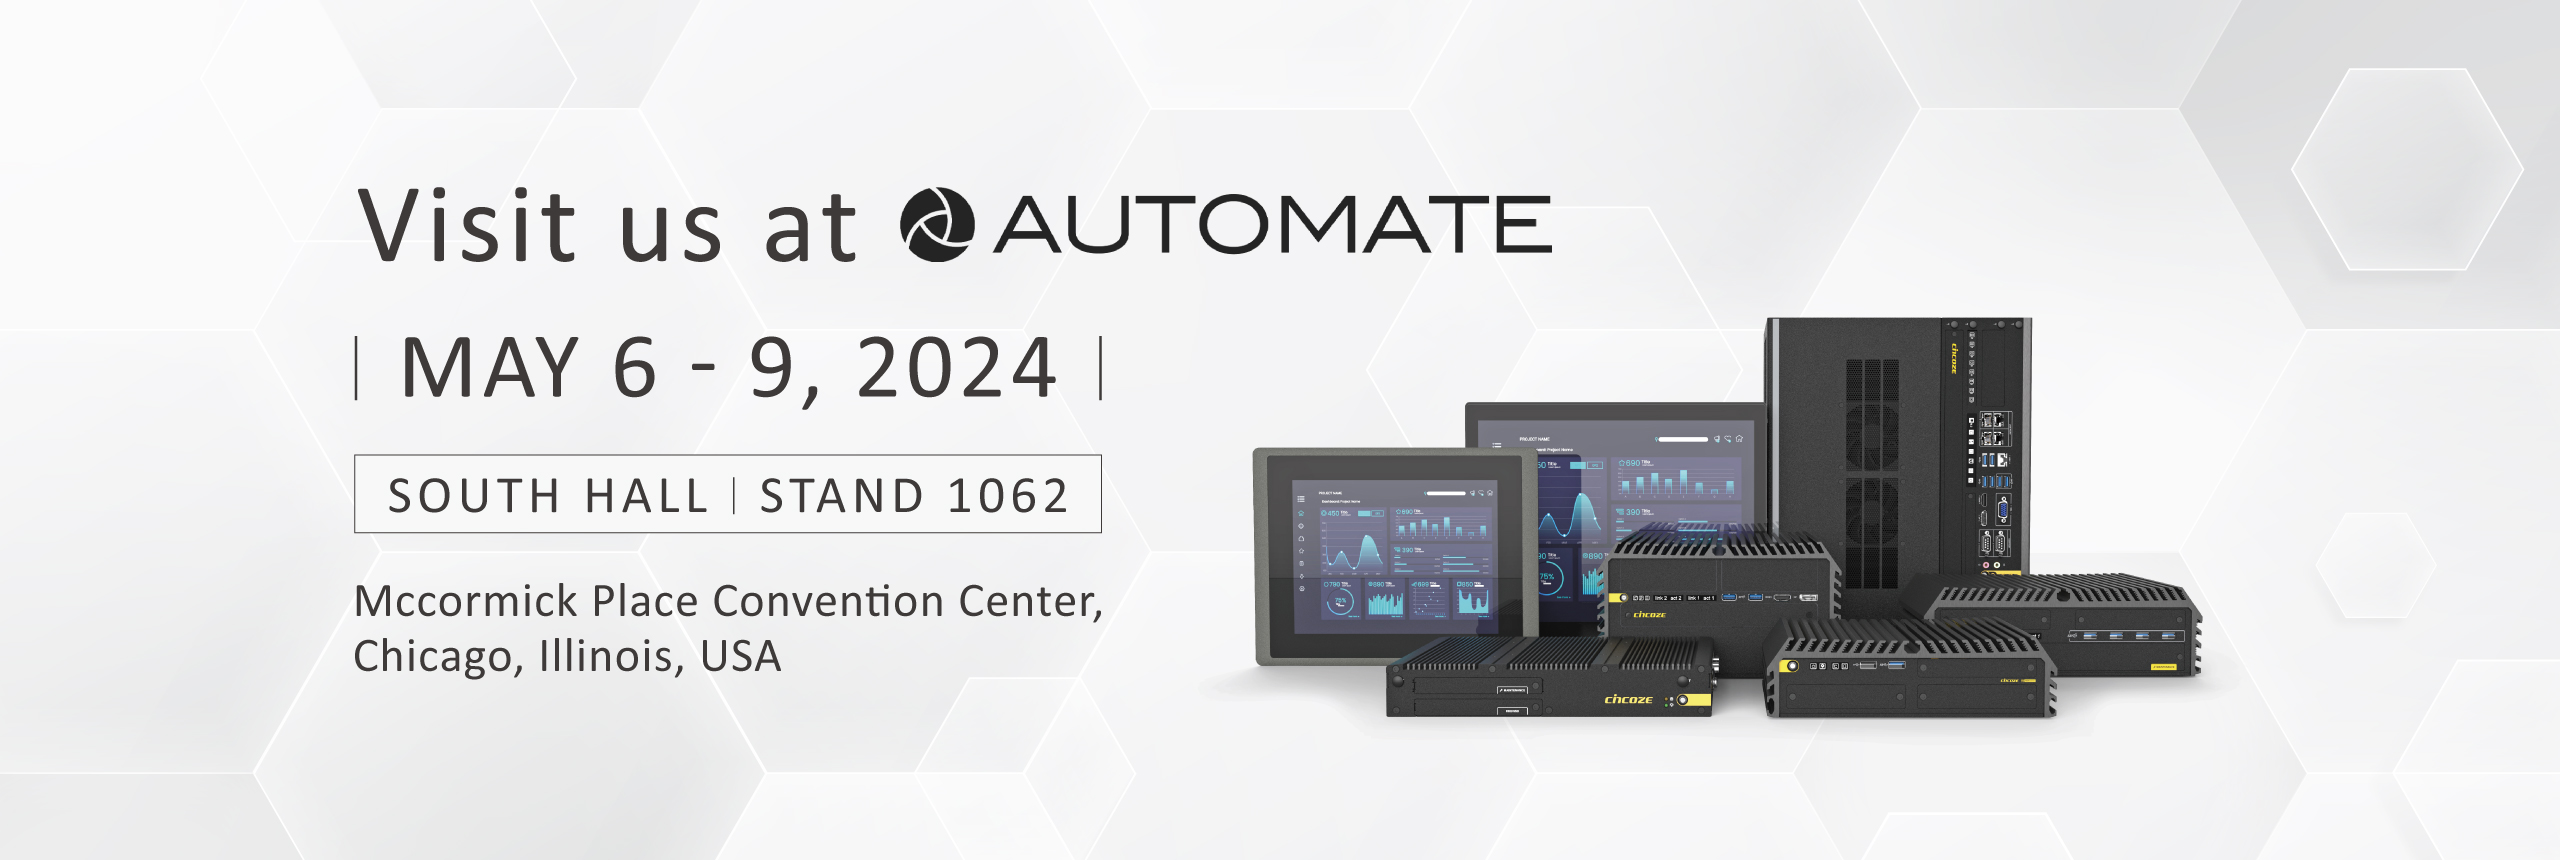 Visit Cincoze at Automate Show 2024 !